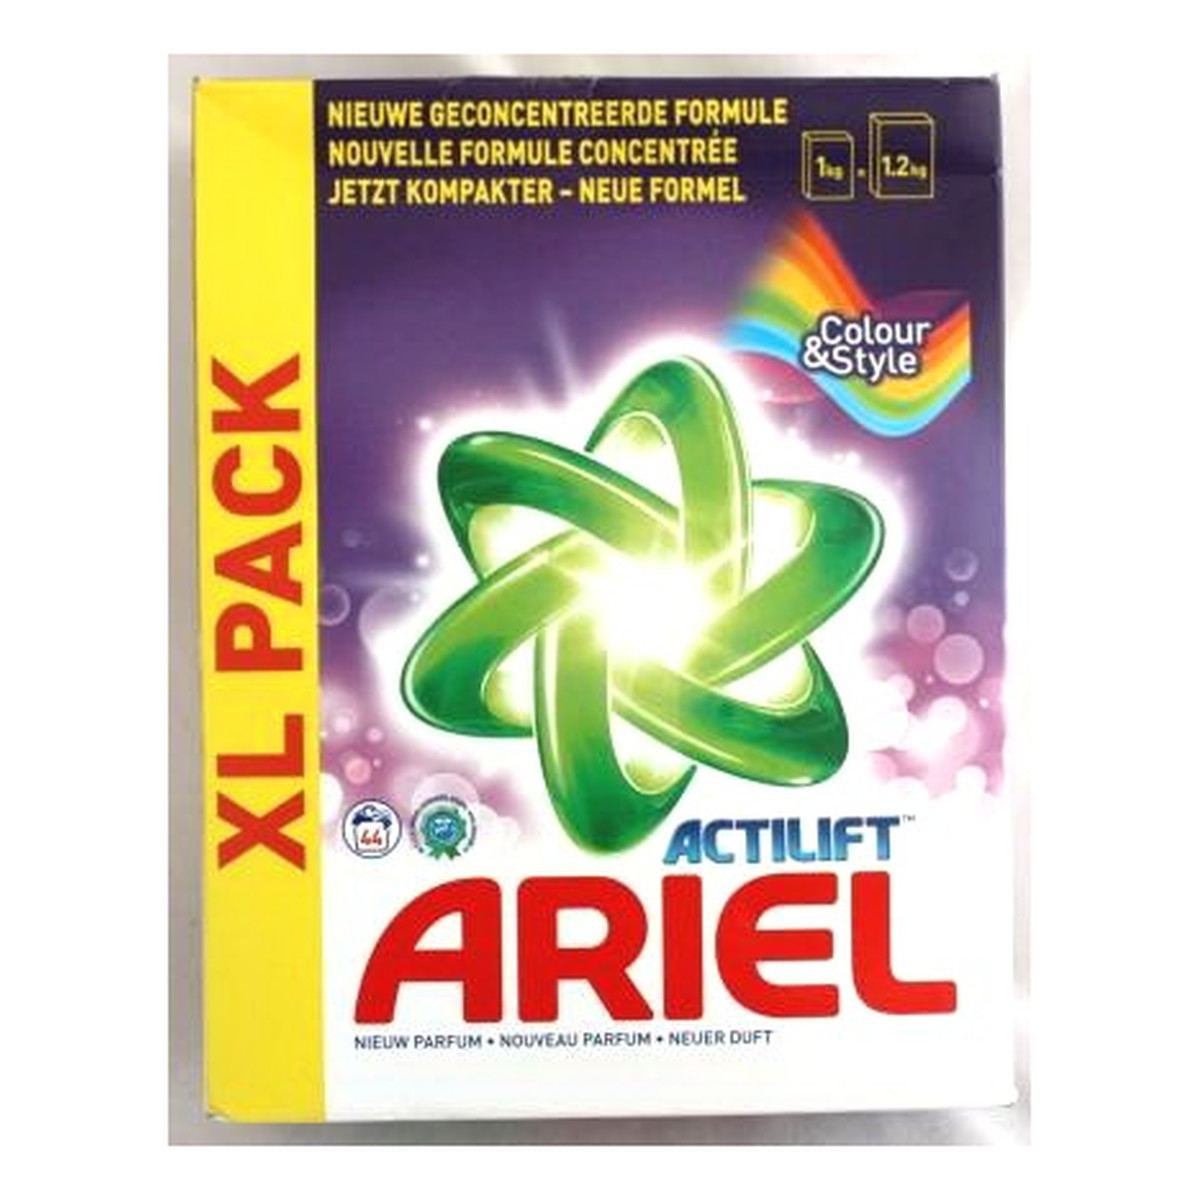 Ariel Actilift Colour & Style Proszek Do Prania Karton 2860g